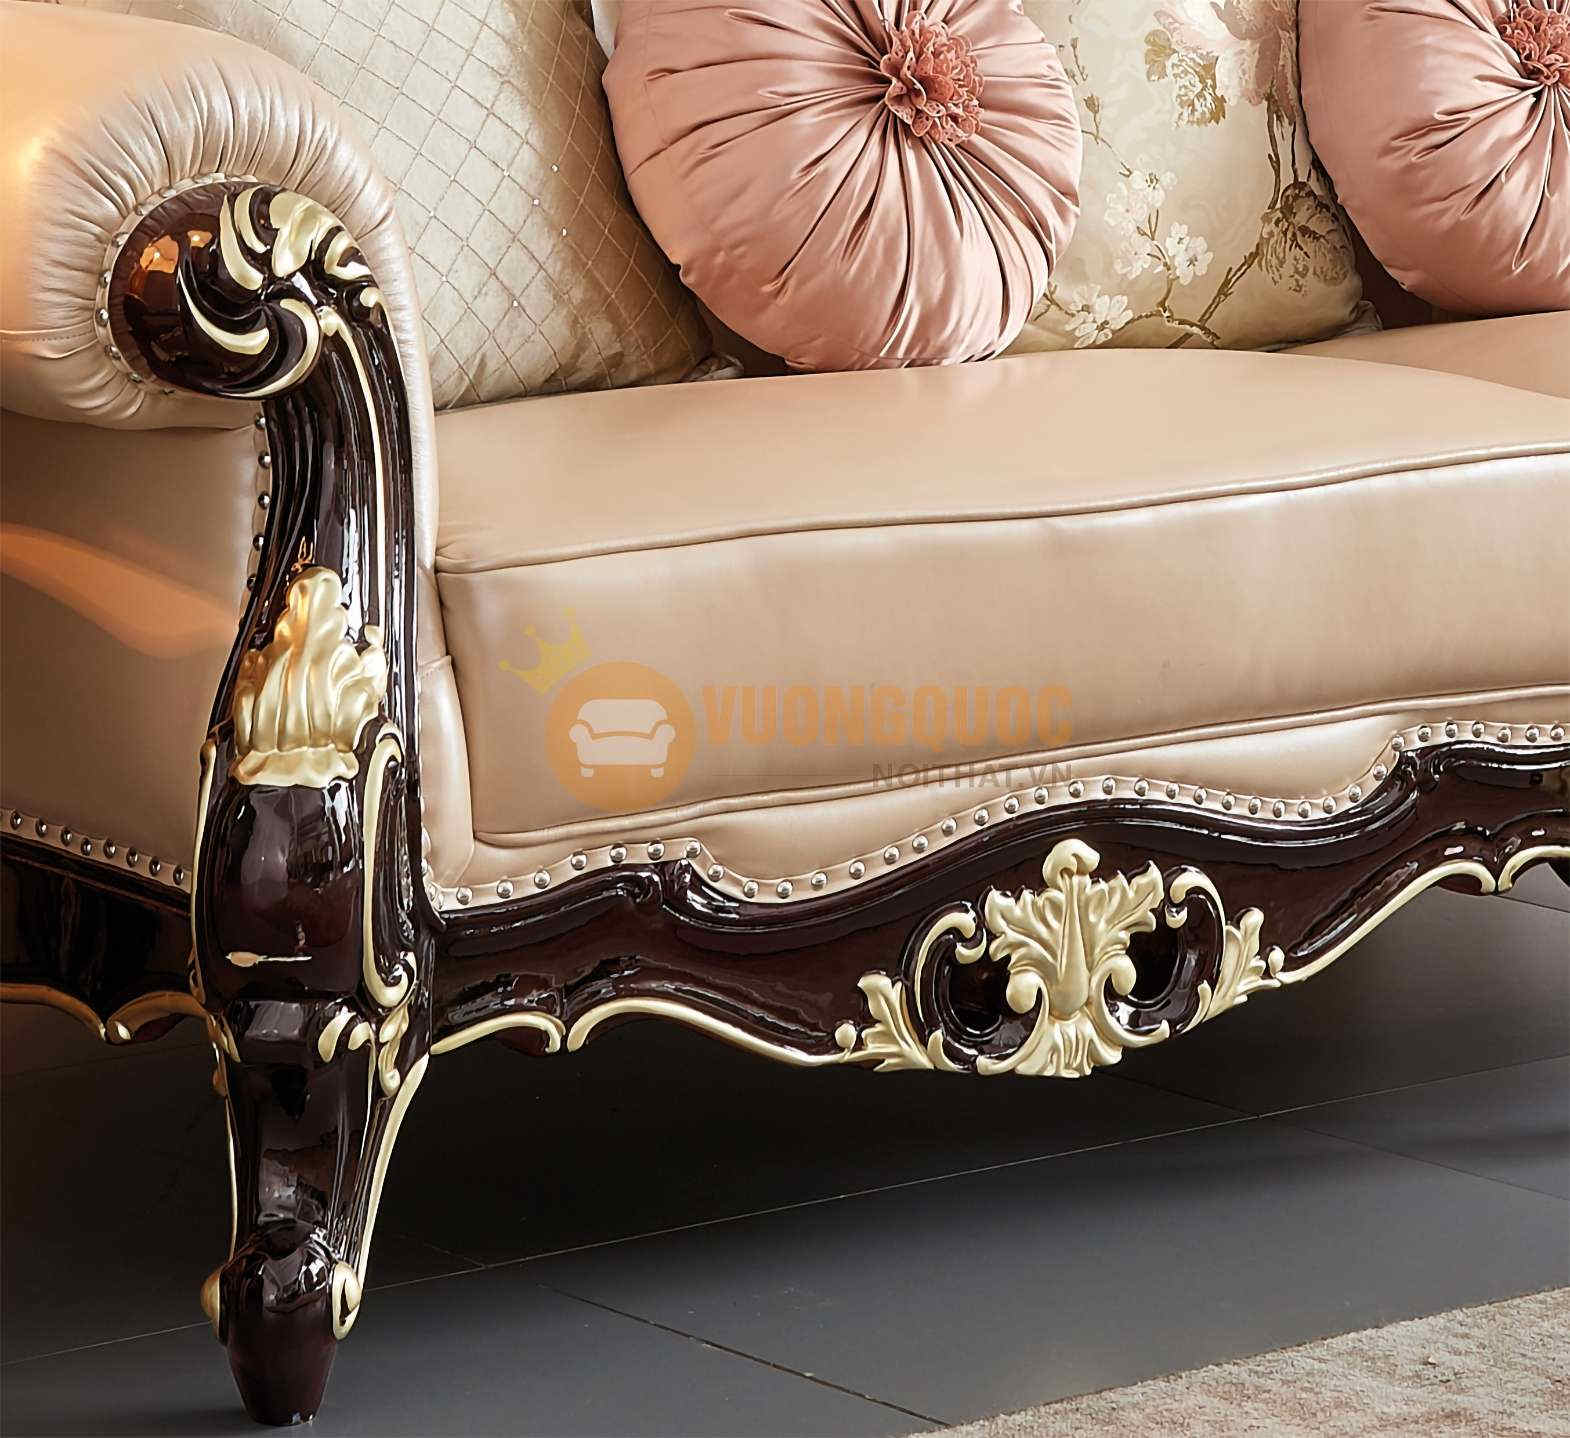 Bộ sofa phòng khách tân cổ điển cao cấp nhập khẩu JVN6911AS